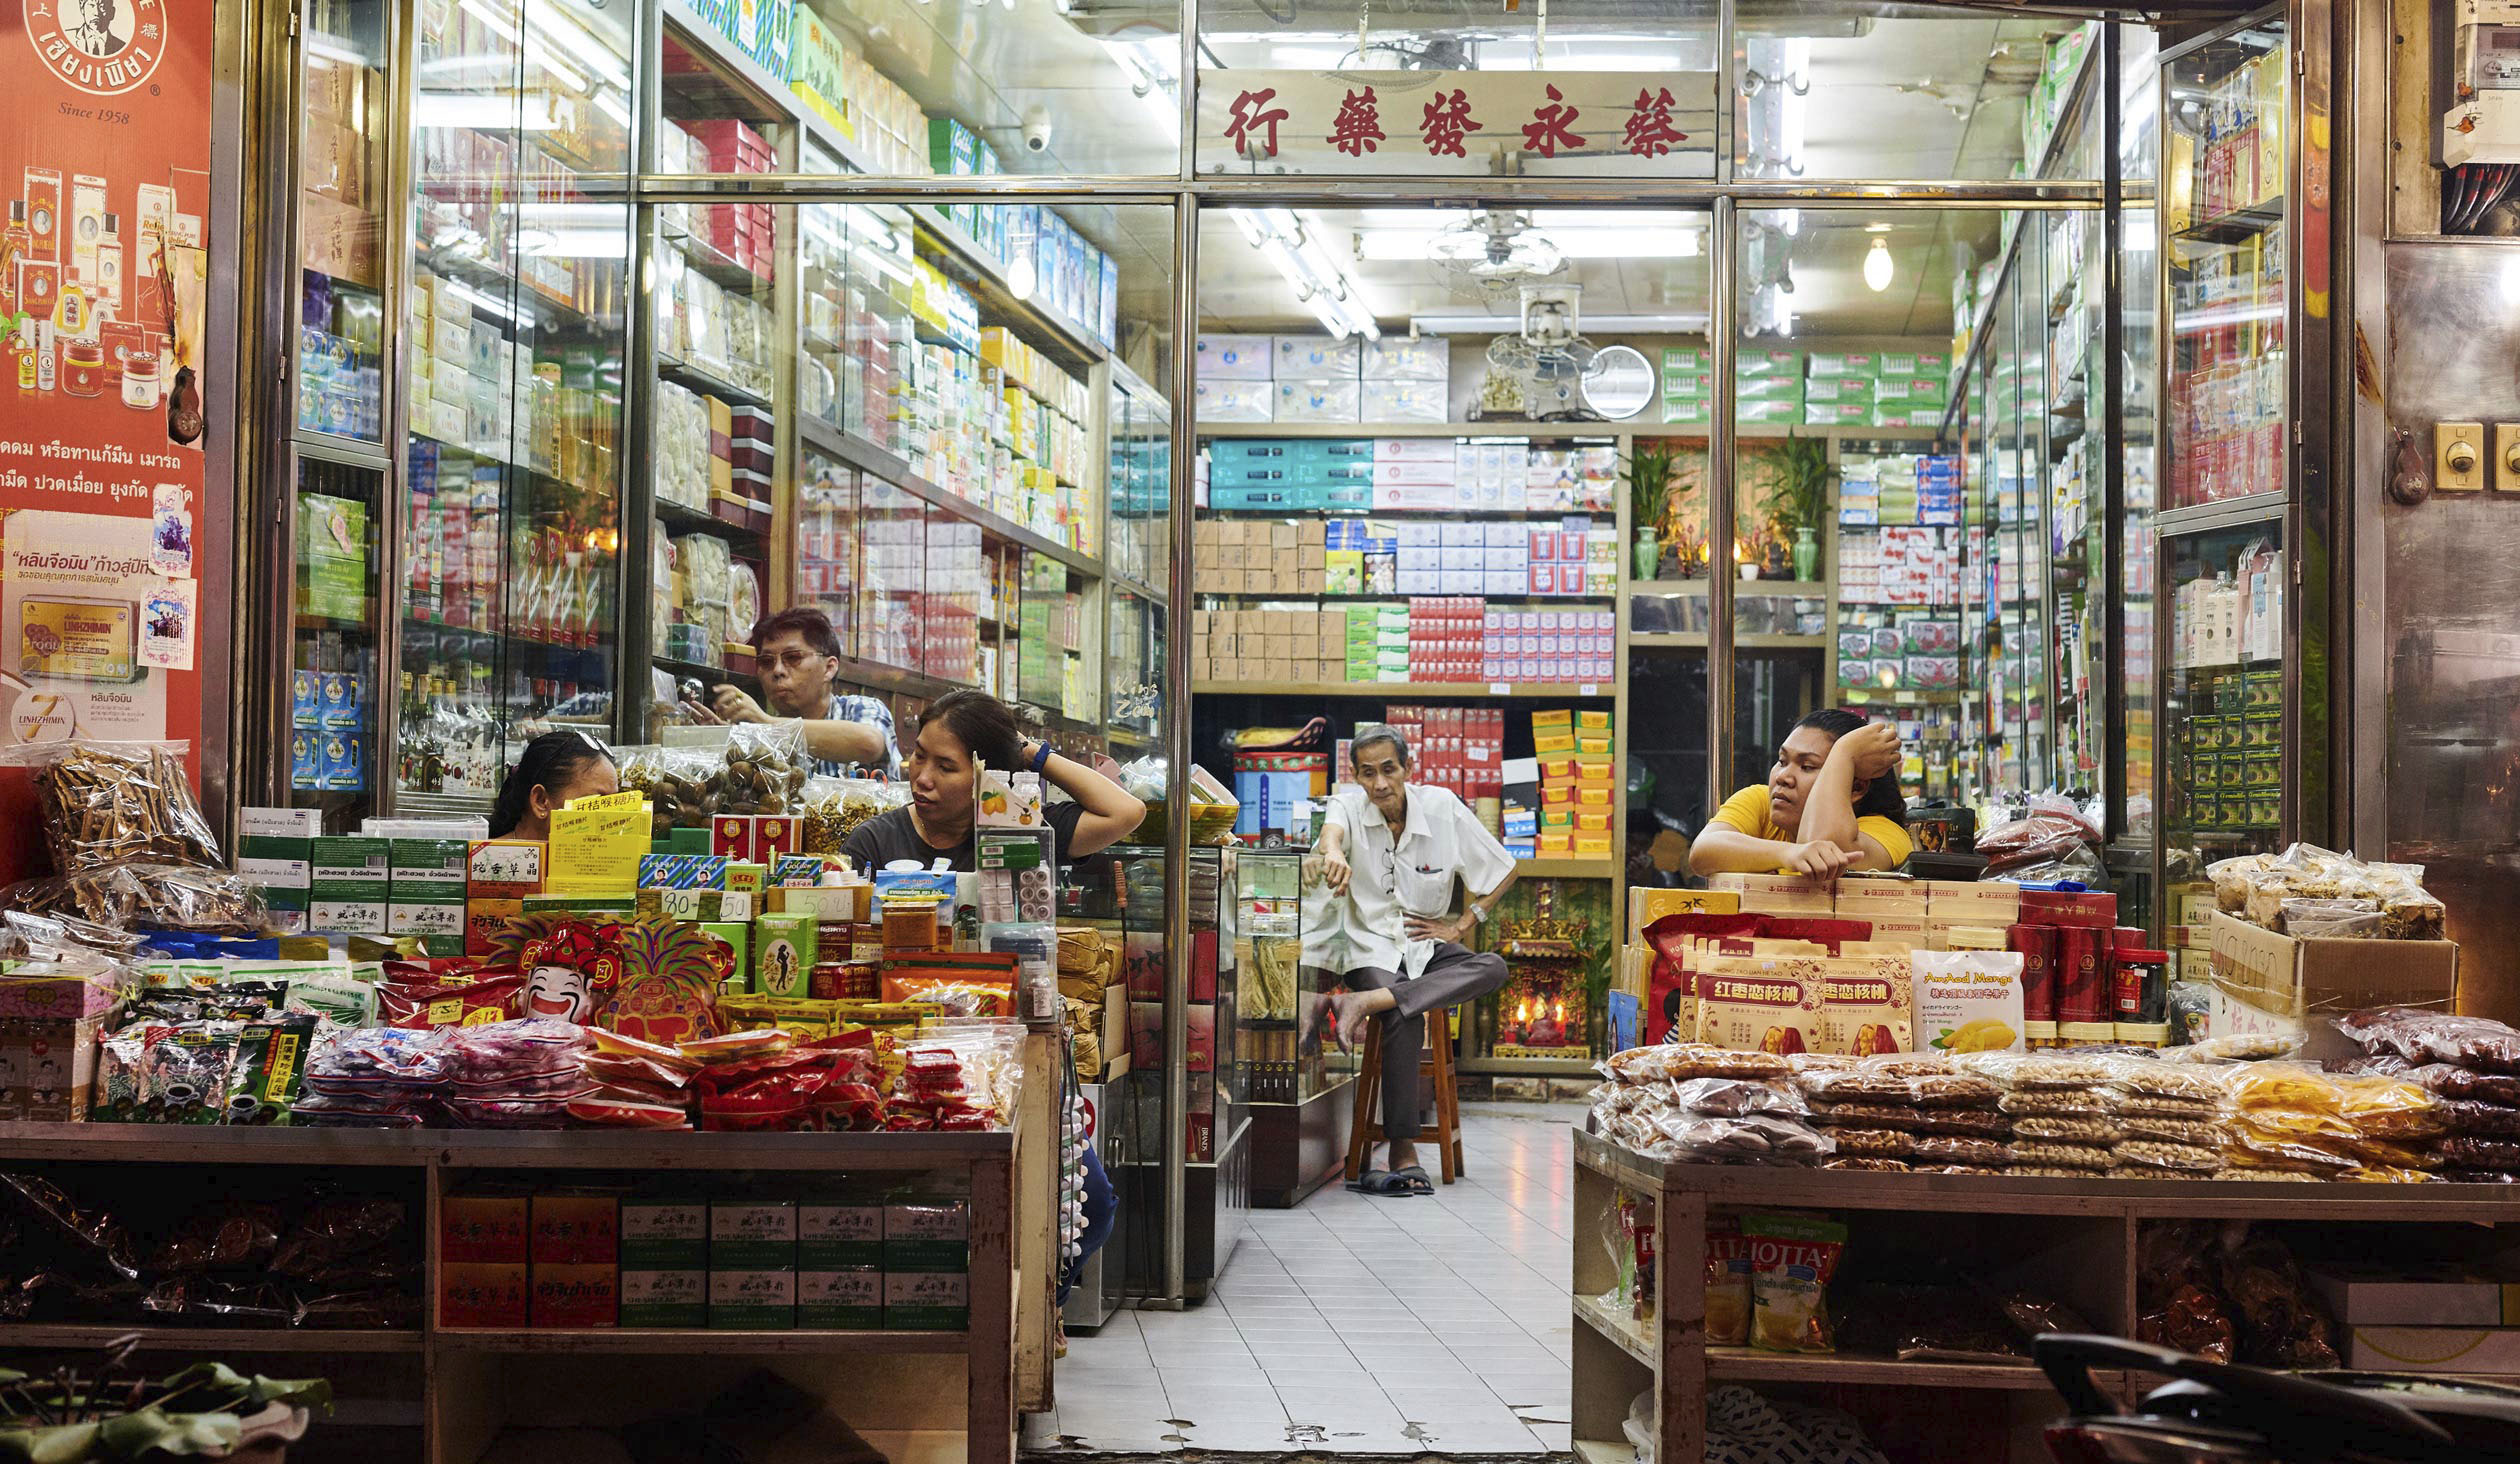 Beitragsbild Chinatown, Chinesische Apotheke fürn Mitarbeiter warten auf kunschaft, Bunt aufenandergestabelte Verpackungen, Reisefotografie